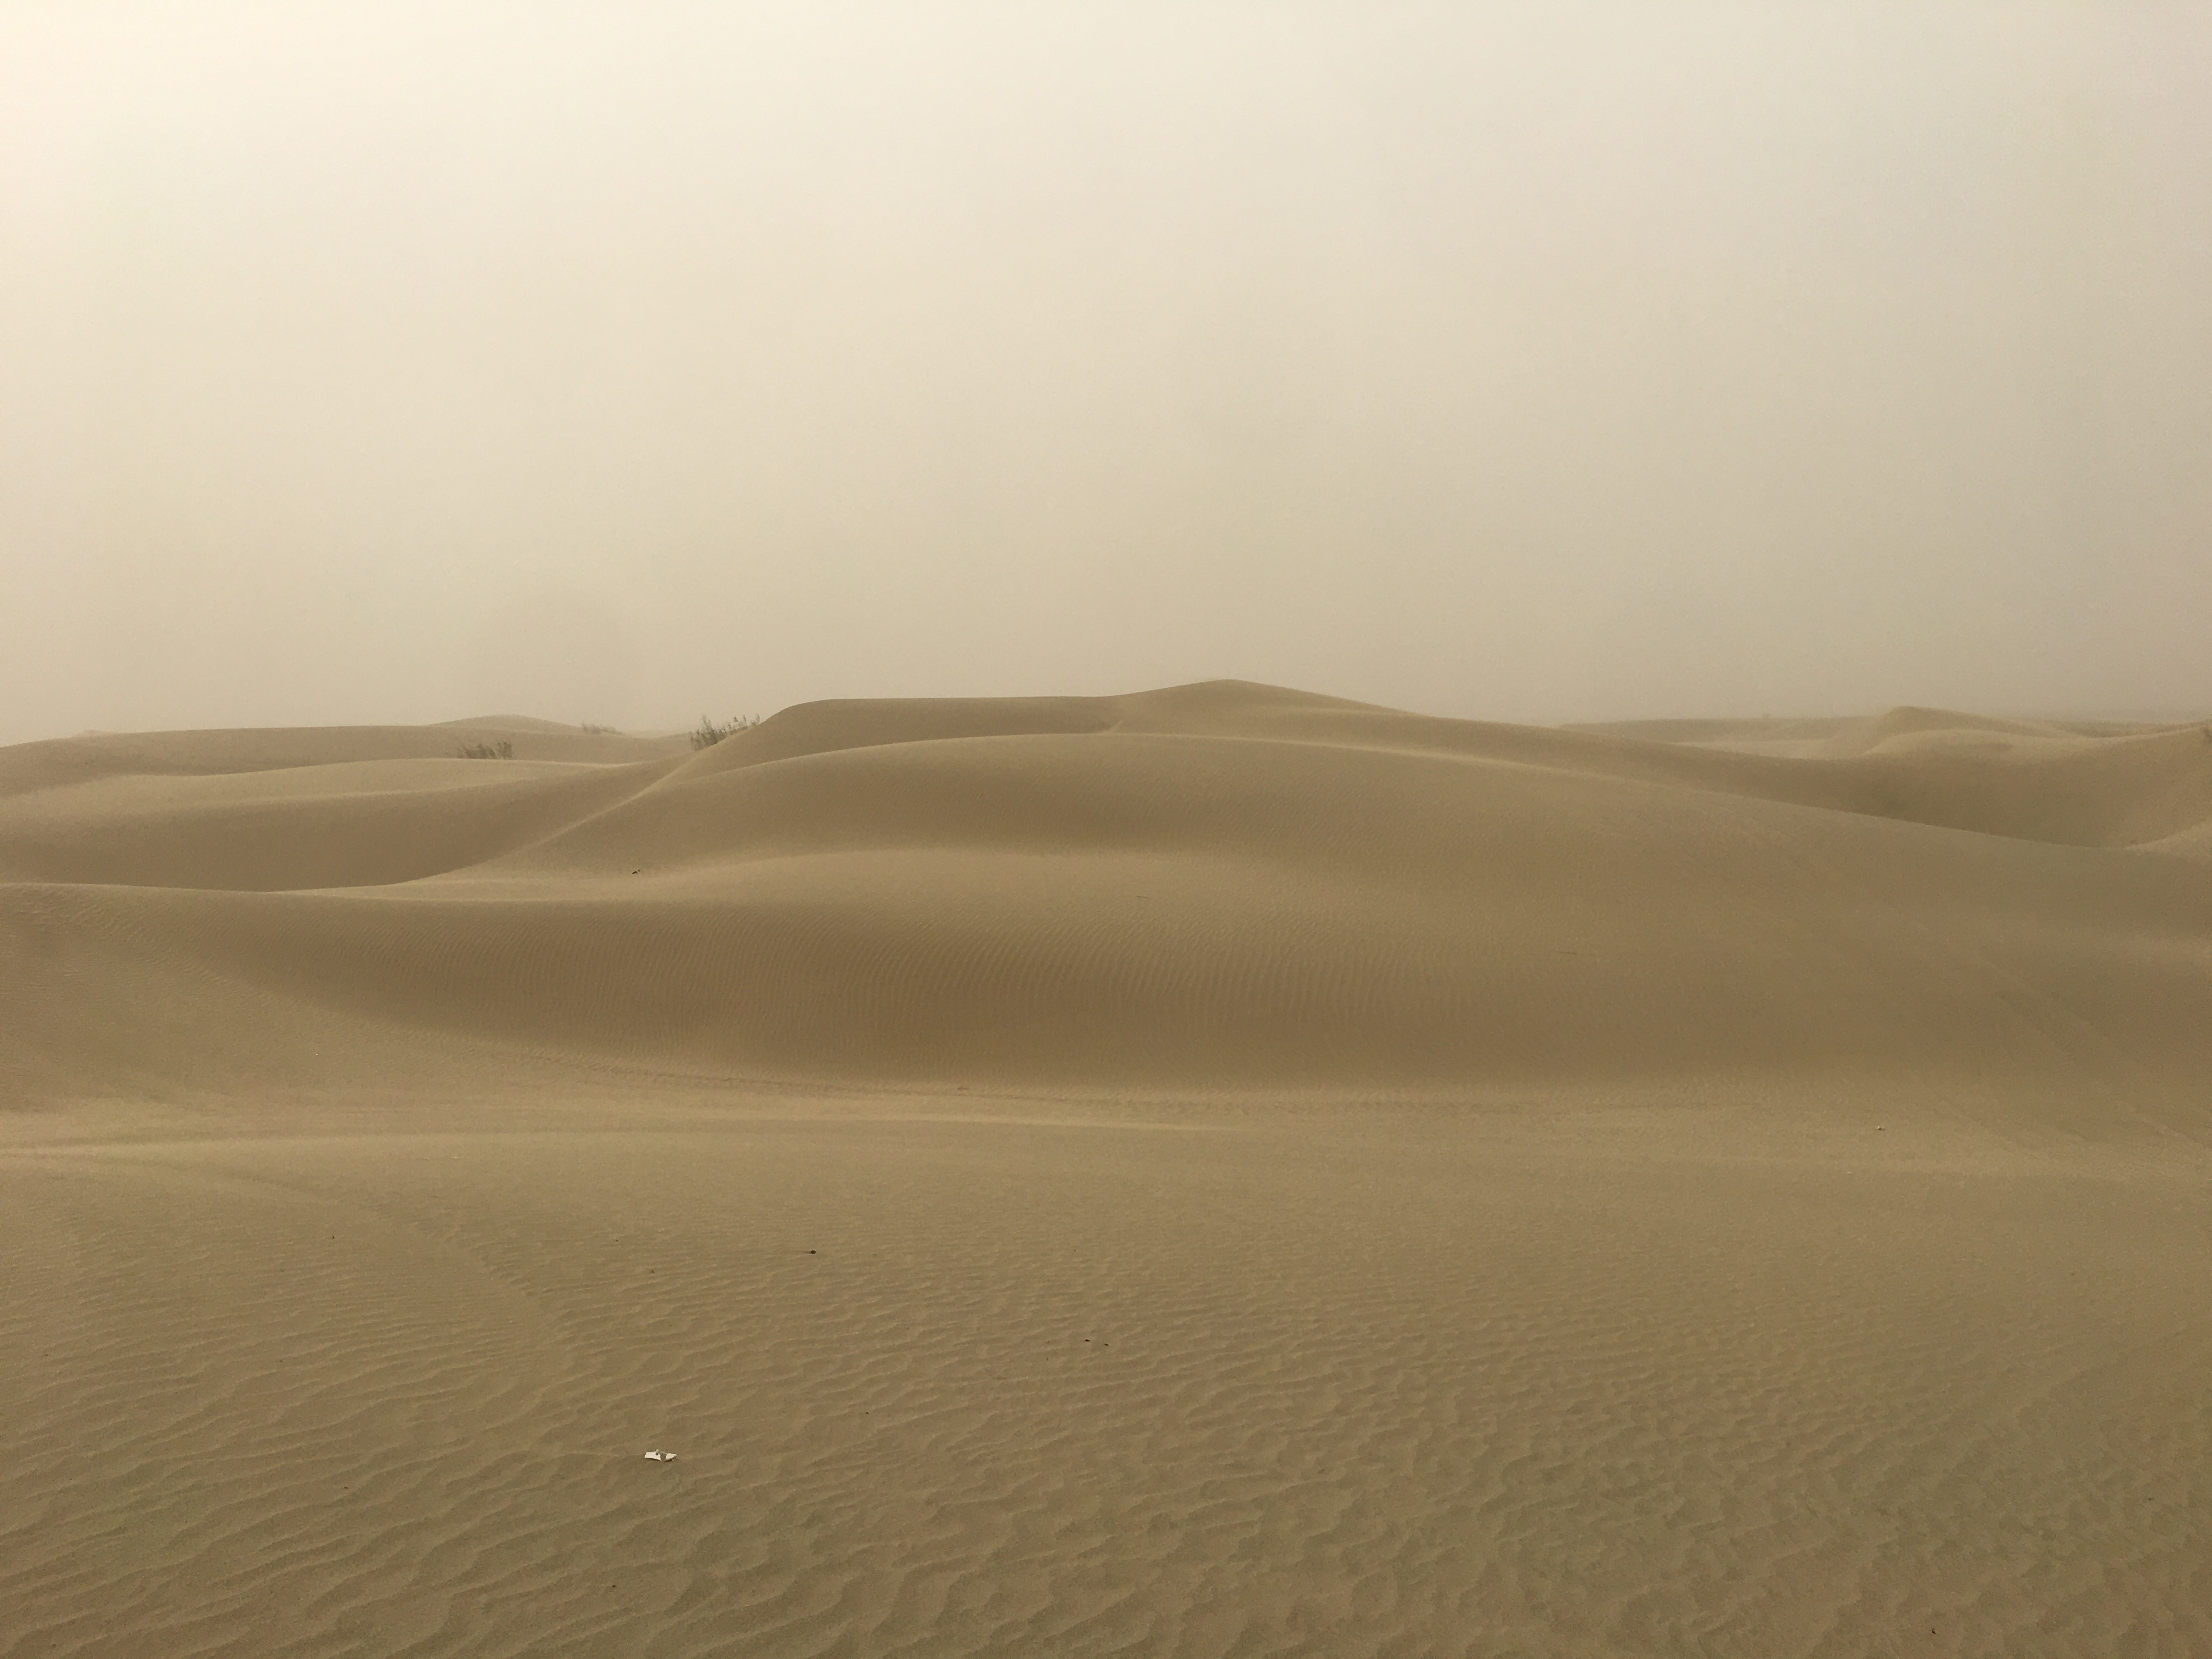 Taklamakan Desert.JPG (1.40 MB)